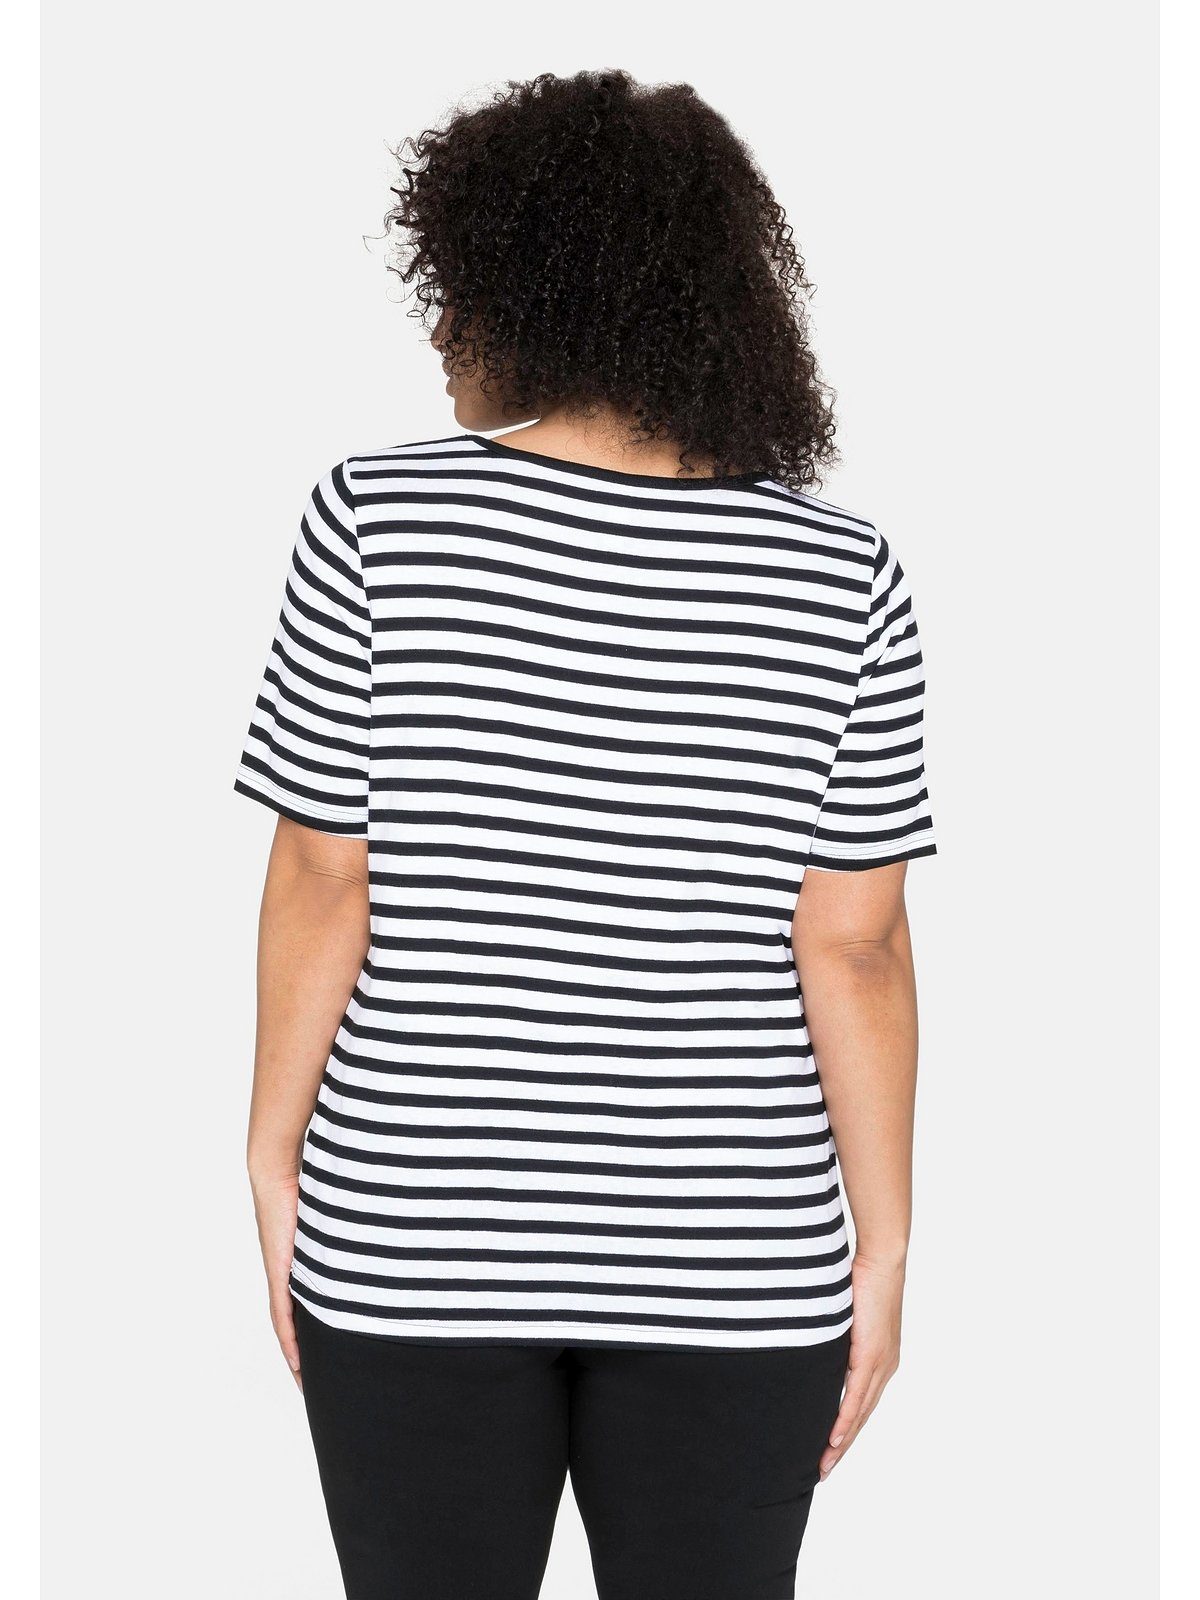 Sheego T-Shirt Große Größen Ringel, aus schwarz-weiß Rippware garngefärbtem mit